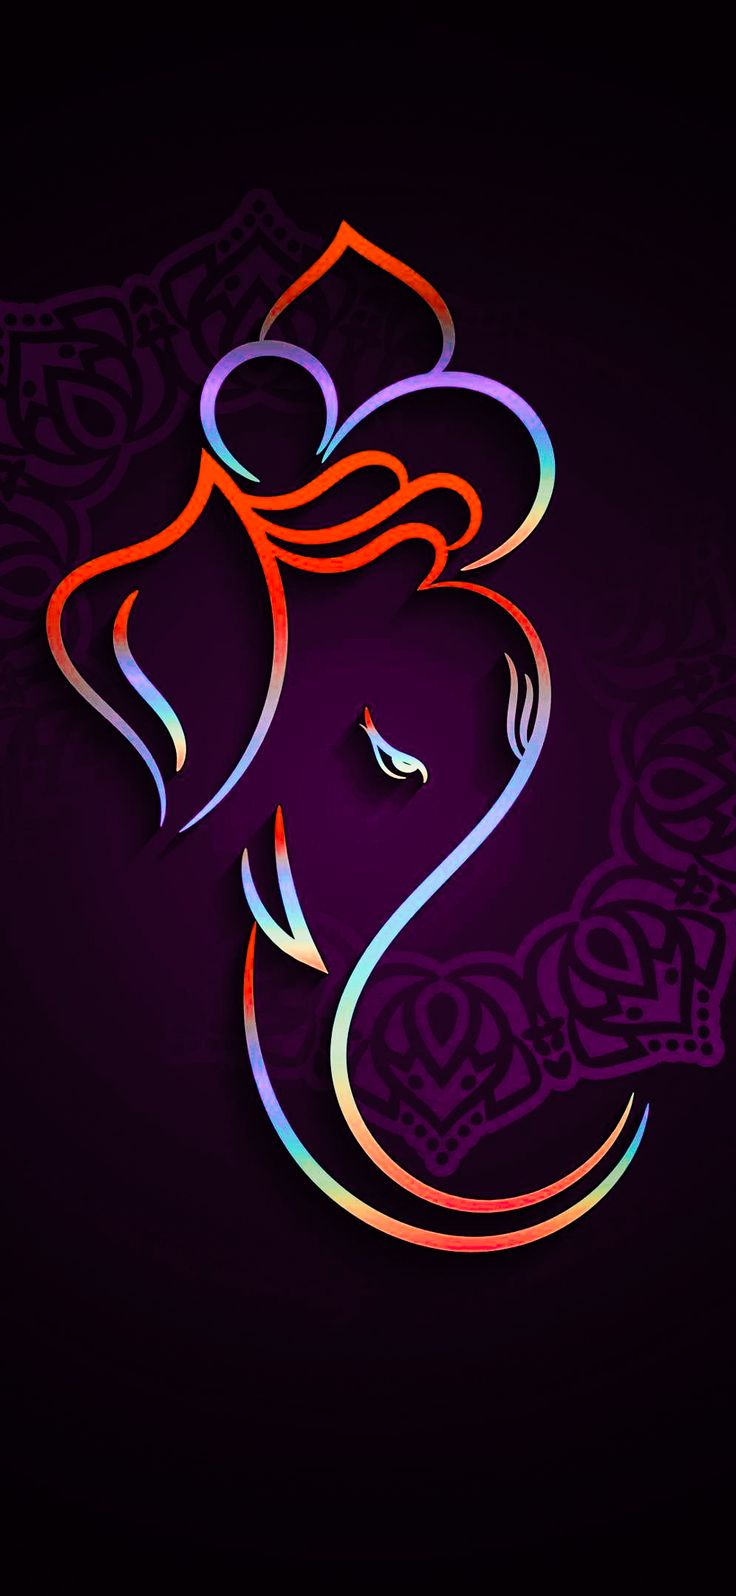 ganesh chaturthi 2021 ganesh logo ganesh ji ka photo ganesh decoration ganesh bhagwan ganesh wallpaper download. Ganesh wallpaper, Ganesha, Wallpaper iphone love